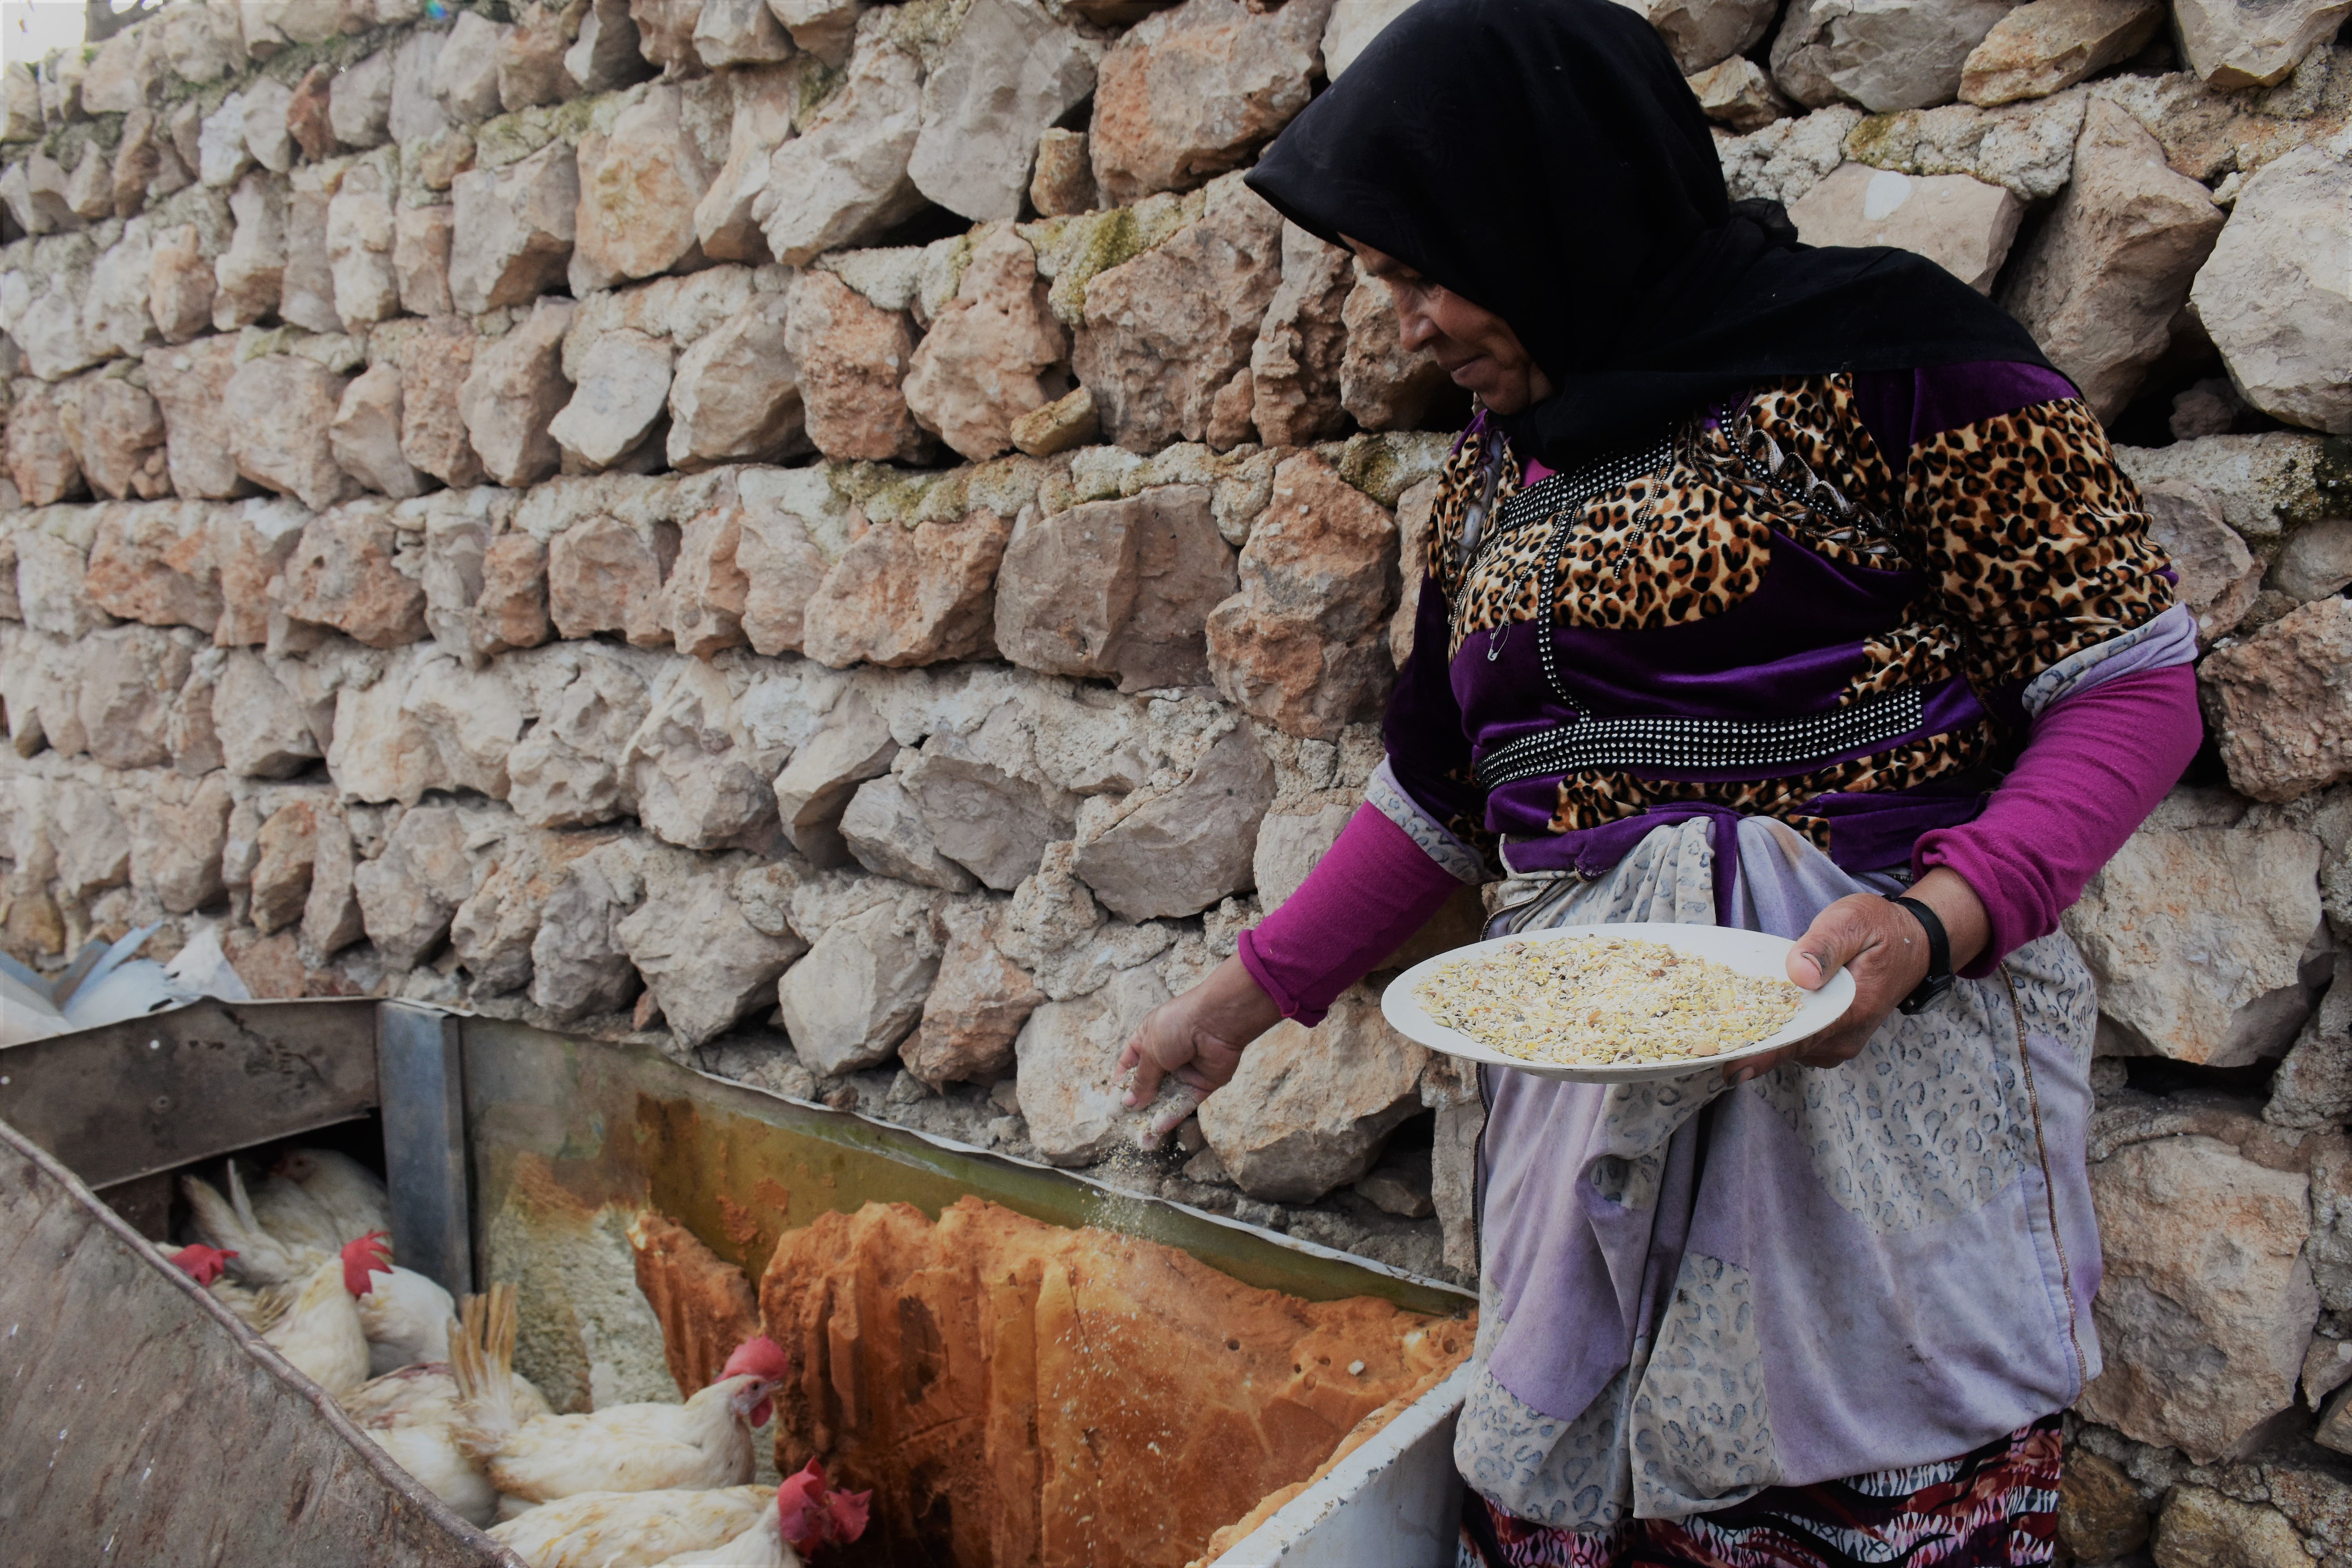 持续的战火令国内的经济活动几乎完全停顿，国民的生计因而大受影响。Nouf曾经逃离原居地阿勒坡（Aleppo），近来当地局势相对稳定，她决定返回阿勒坡。乐施会向Nouf及附近社区超过250个家庭提供鸡只及饲料，让他们可以透过饲养牲畜、售卖鸡只和鸡蛋，重建生计。（摄影︰Dania Kareh / Oxfam）